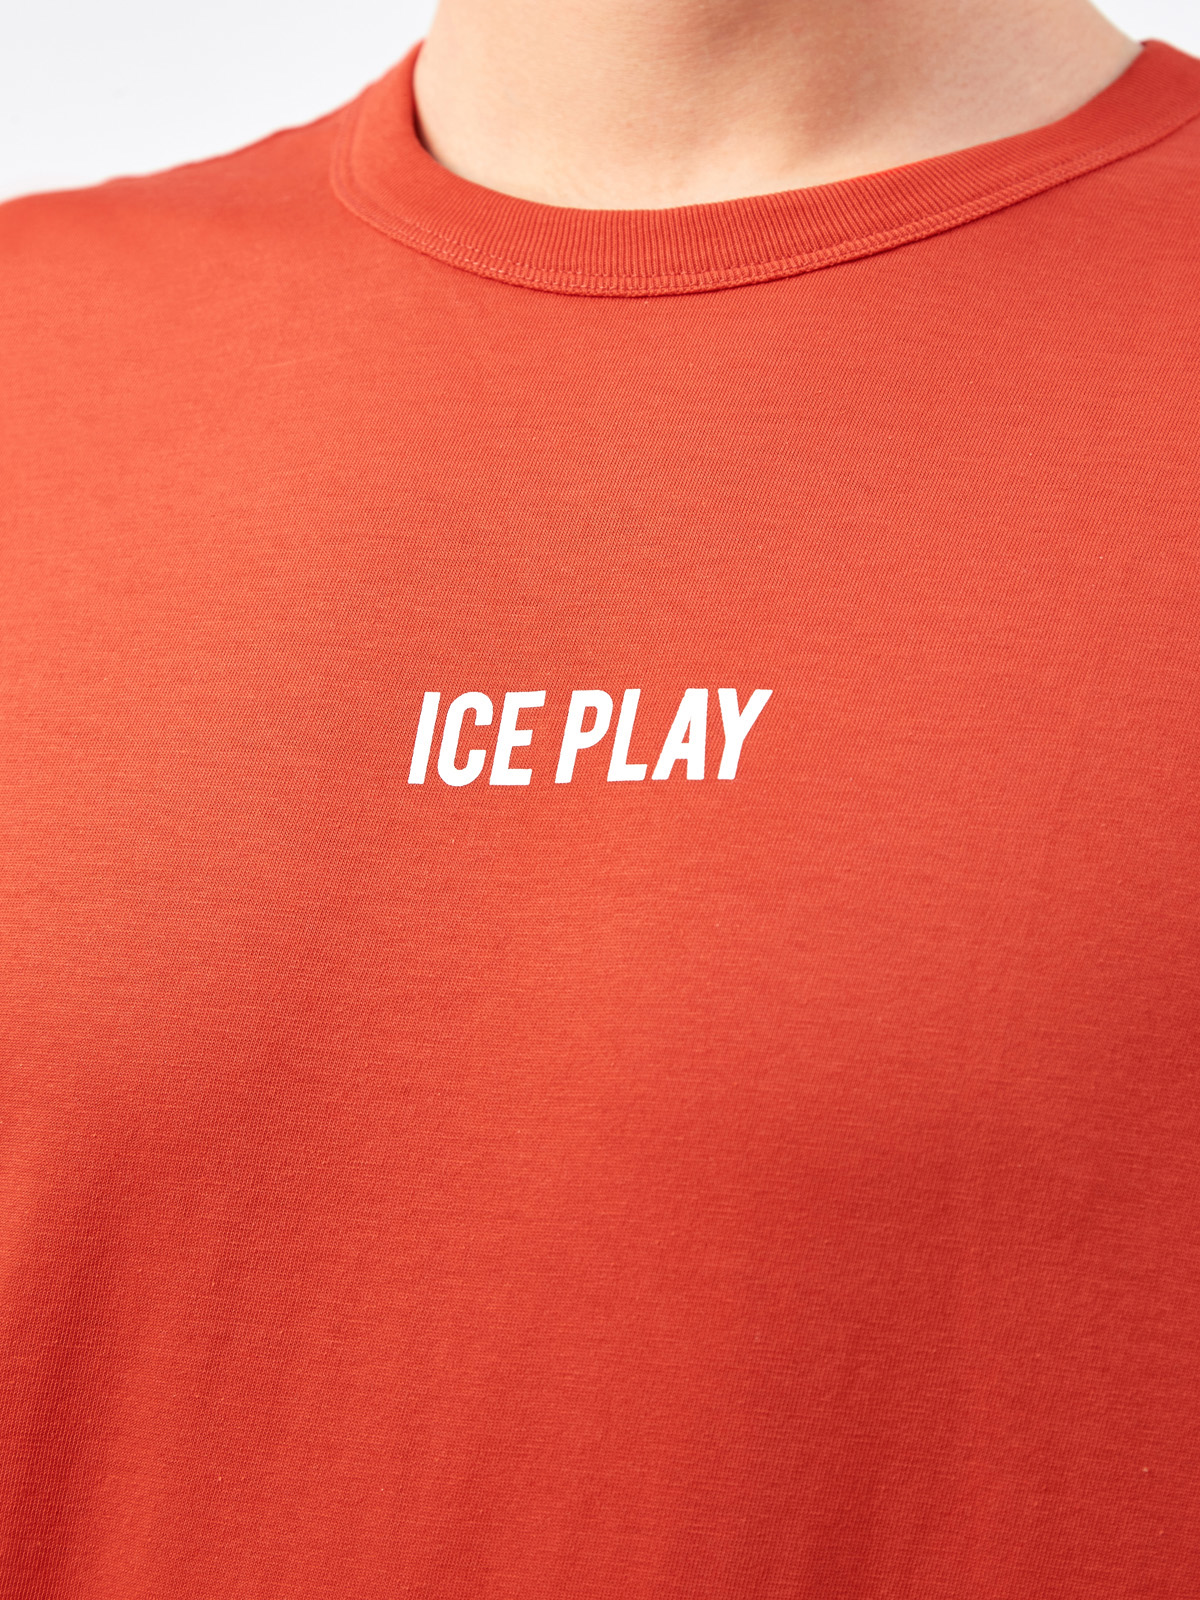 Хлопковая футболка с контрастным логотипом бренда ICE PLAY, цвет оранжевый, размер L - фото 5